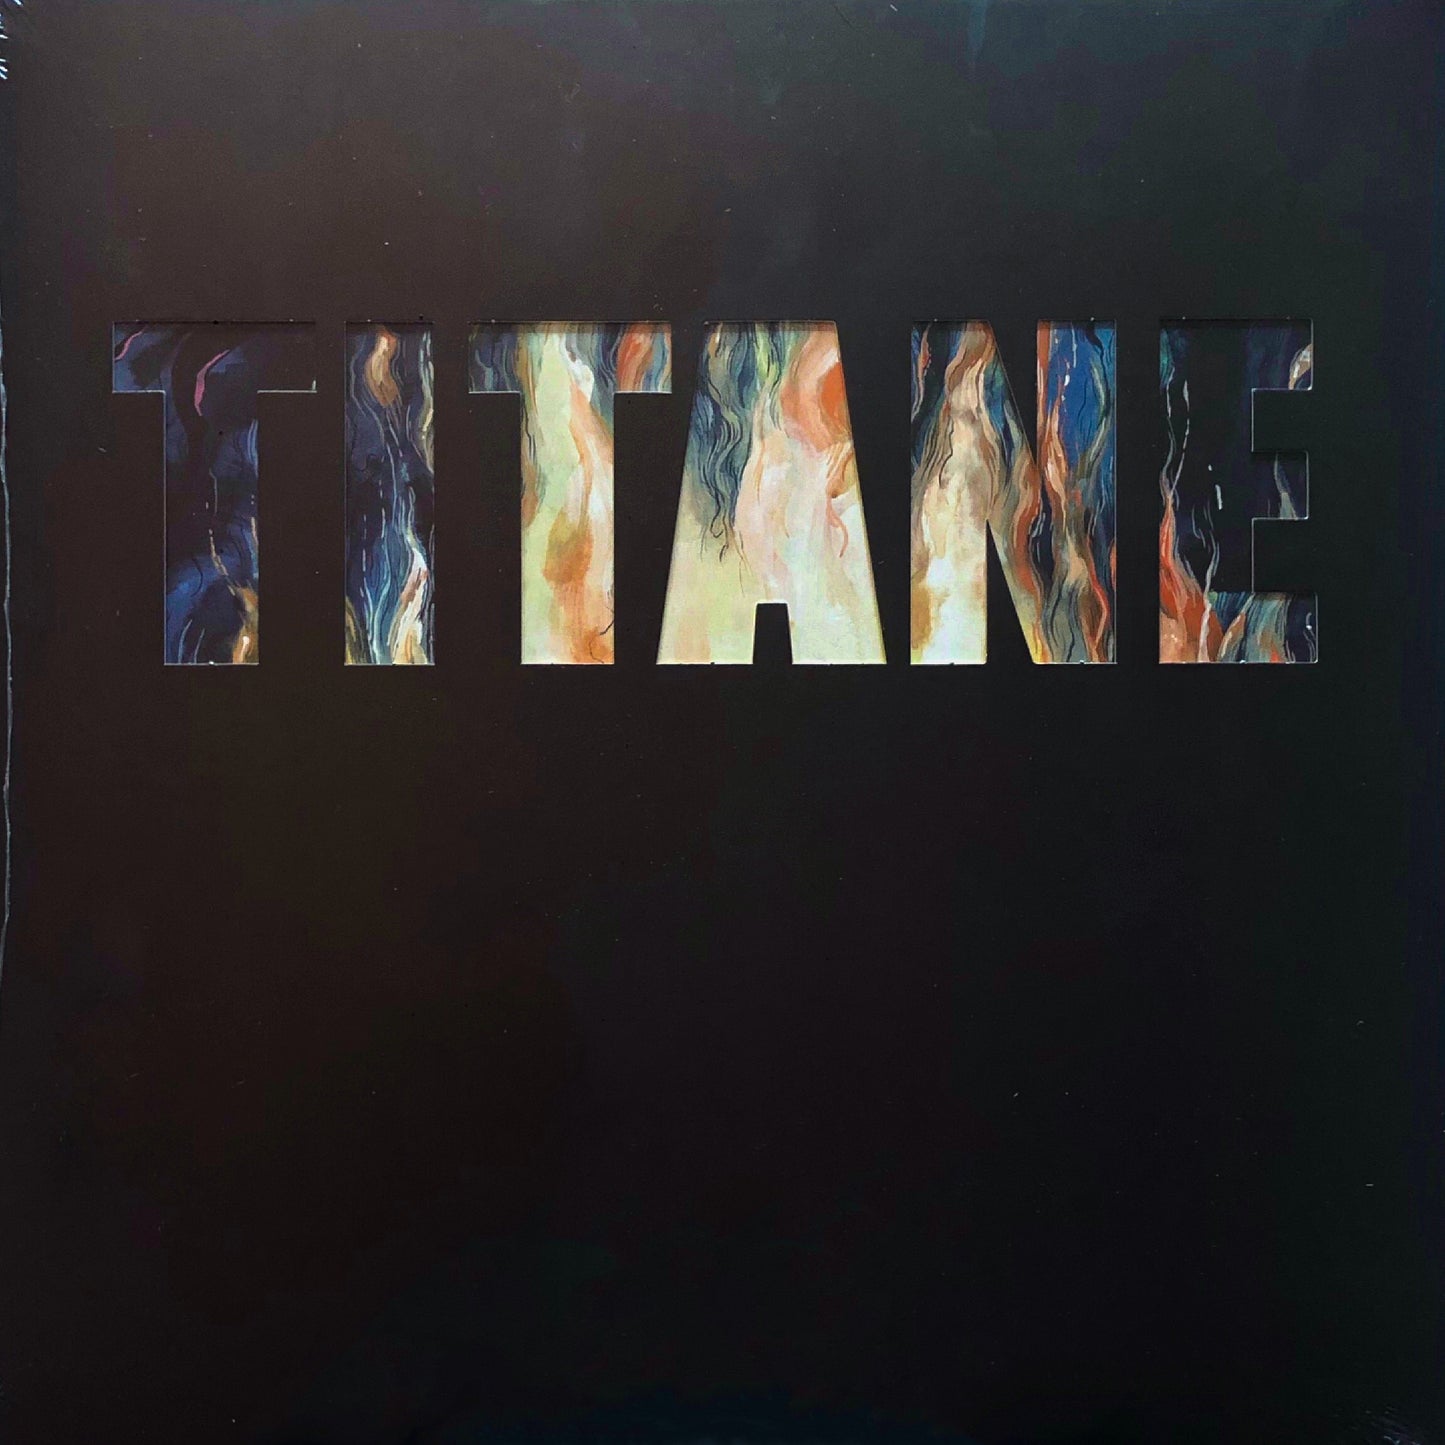 Titane (Original Motion Picture Soundtrack)